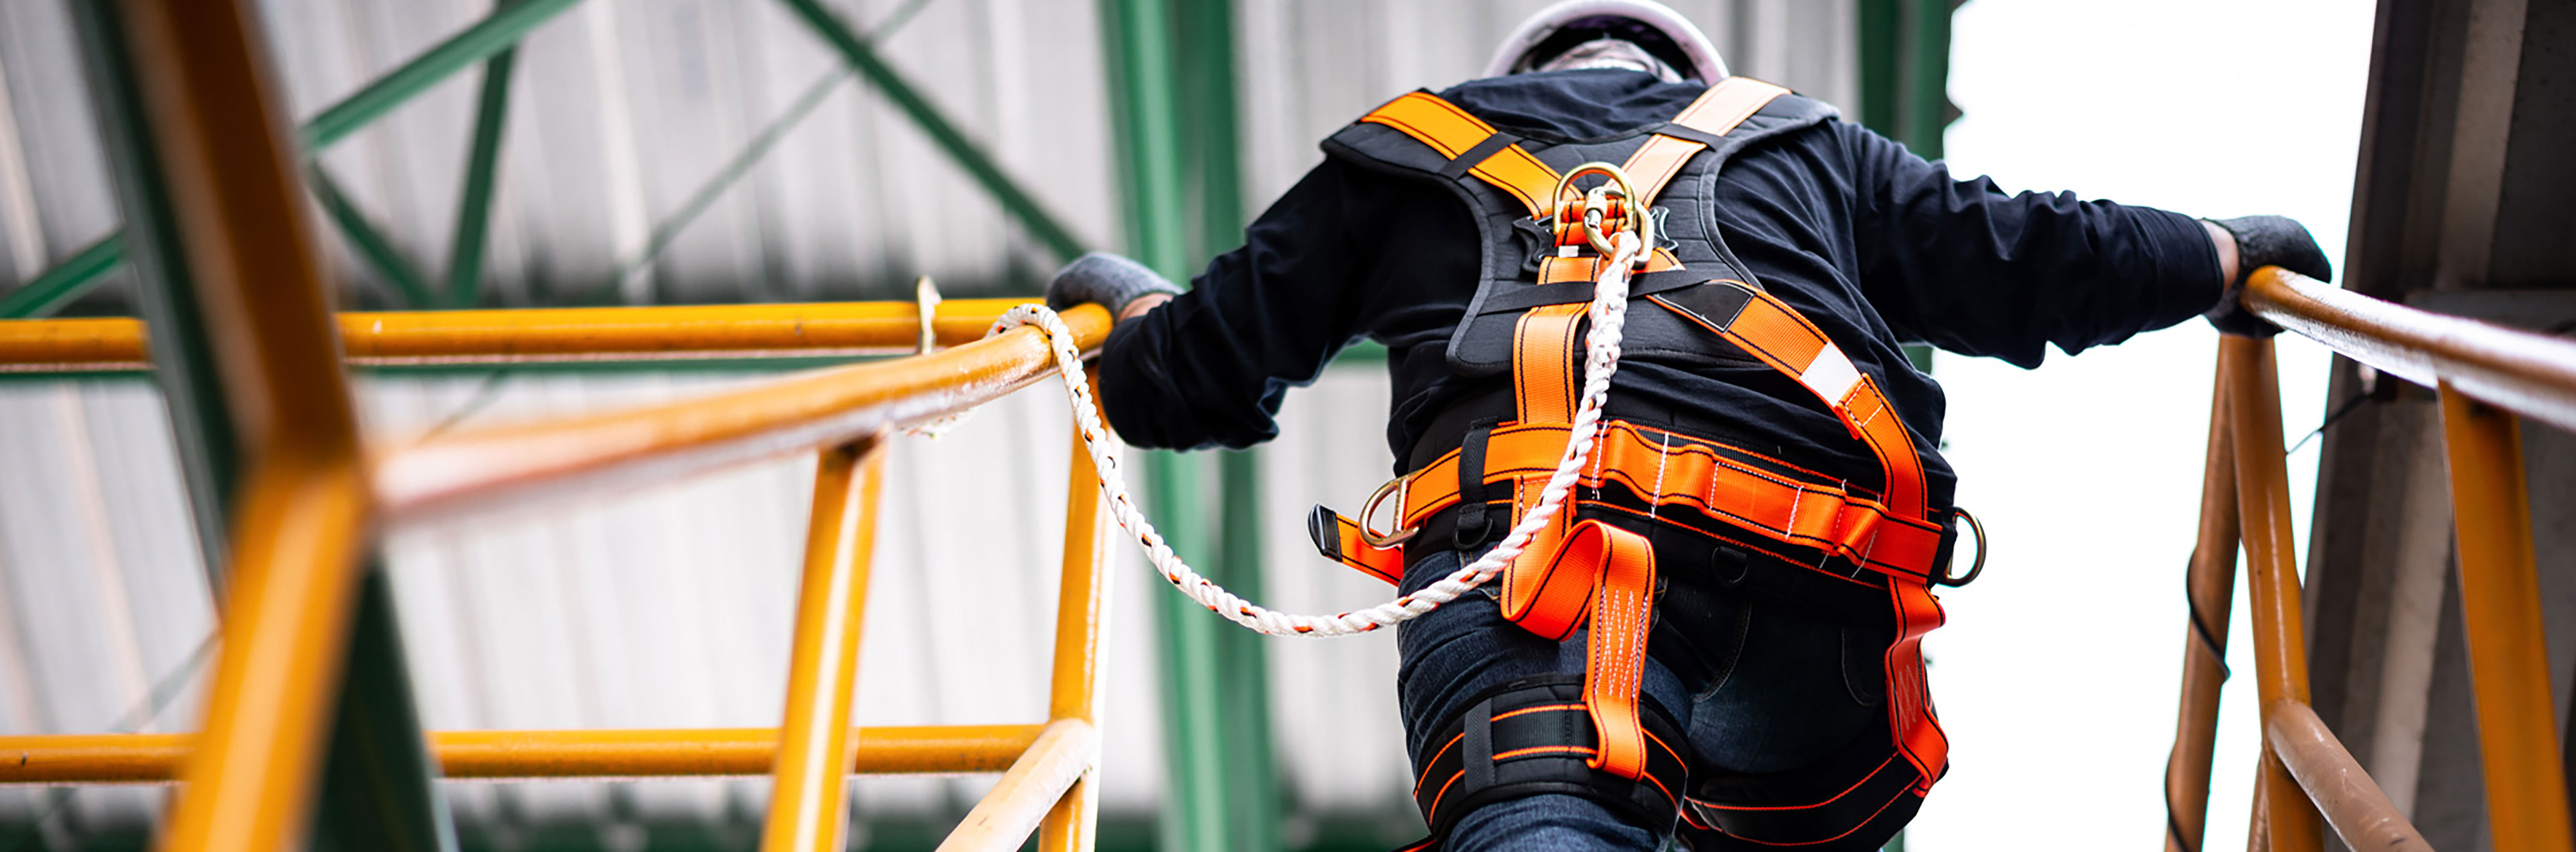 疯拍传媒 construction worker wearing safety harness and safety line working at a high location